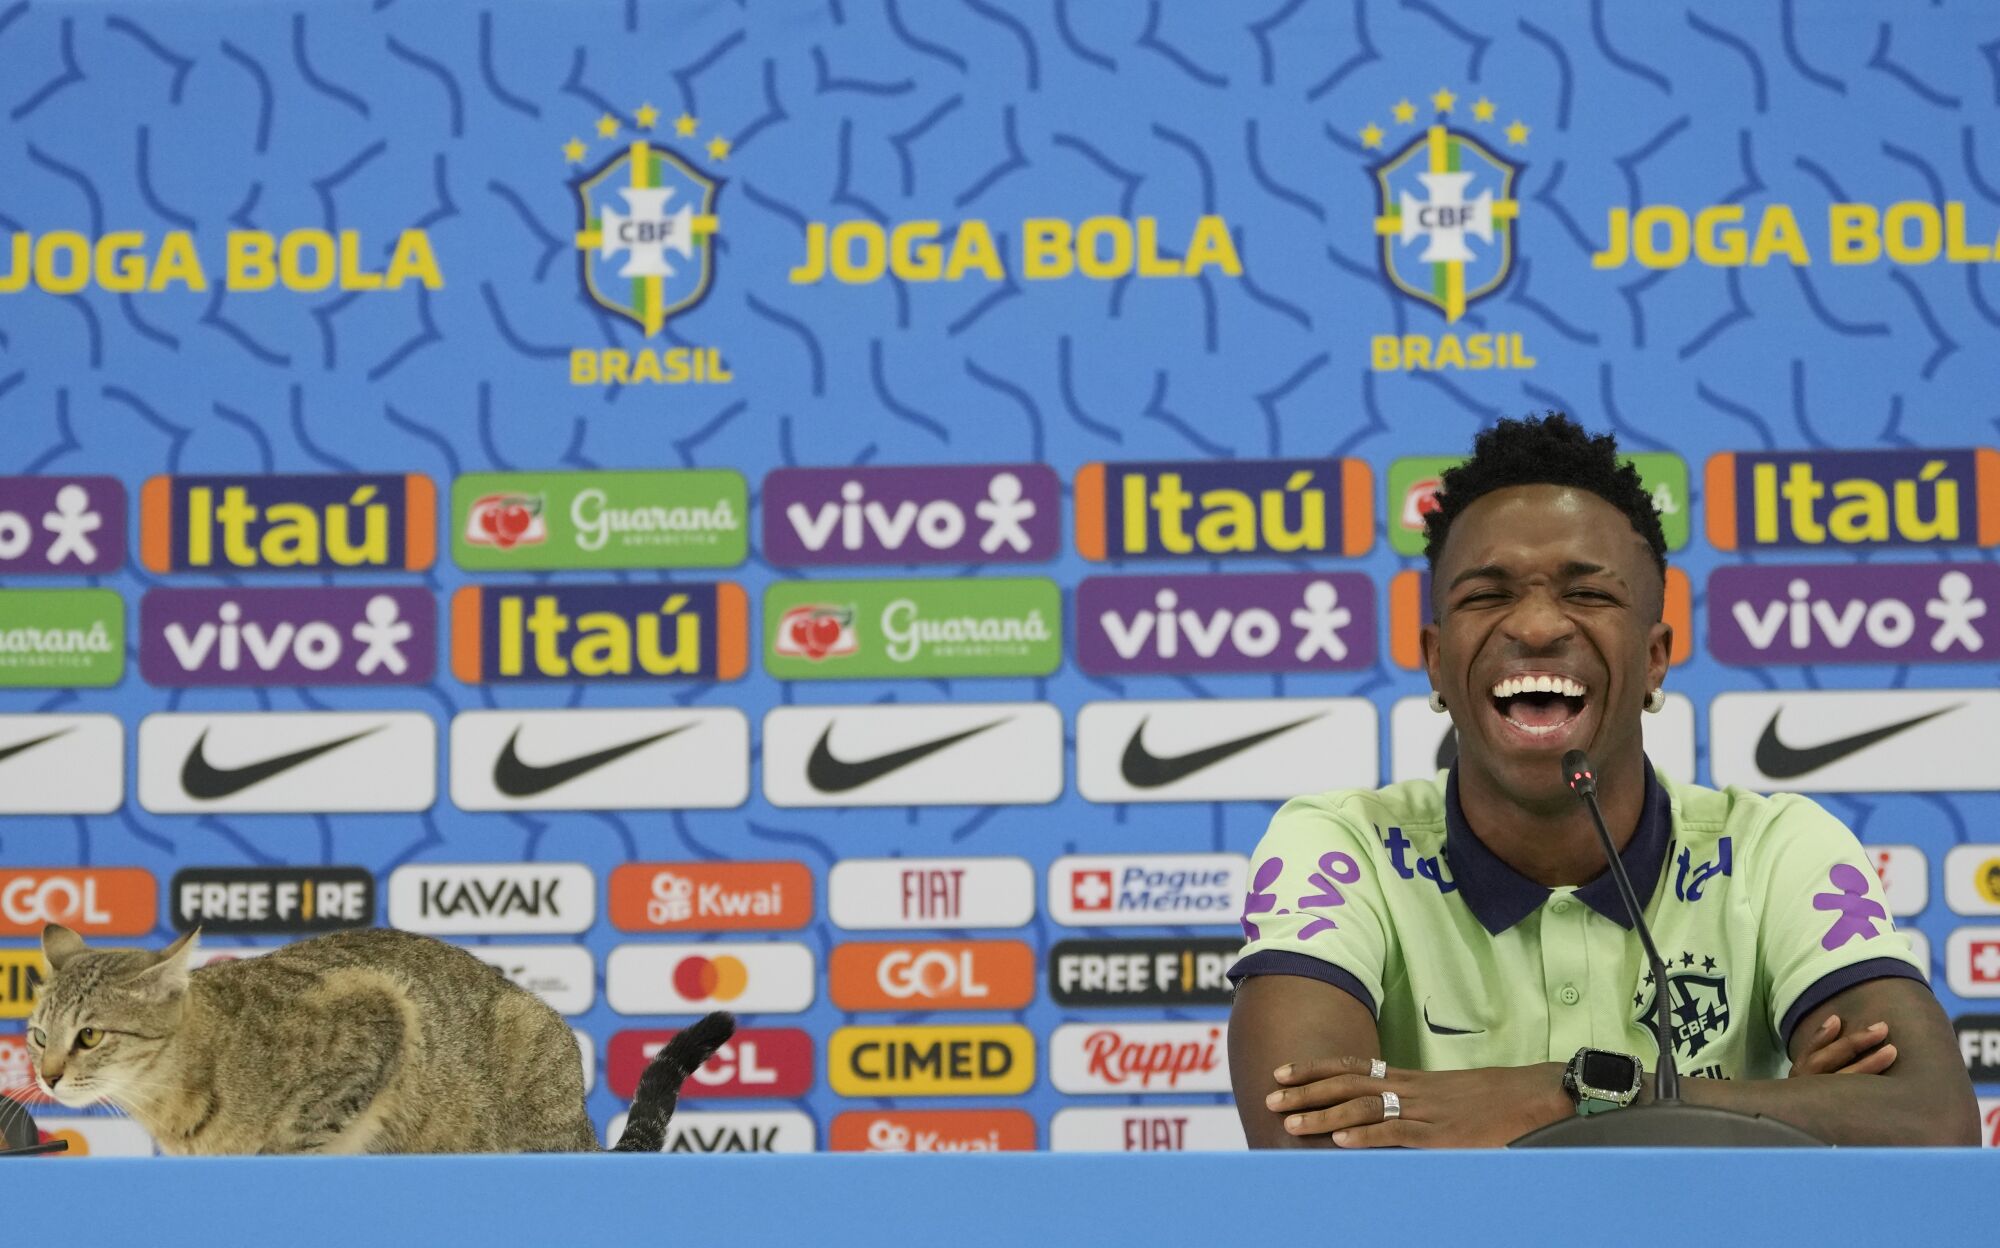 Brezilyalı Vinicius Junior, bir basın toplantısı sırasında masanın üzerine oturan bir kediye gülüyor.